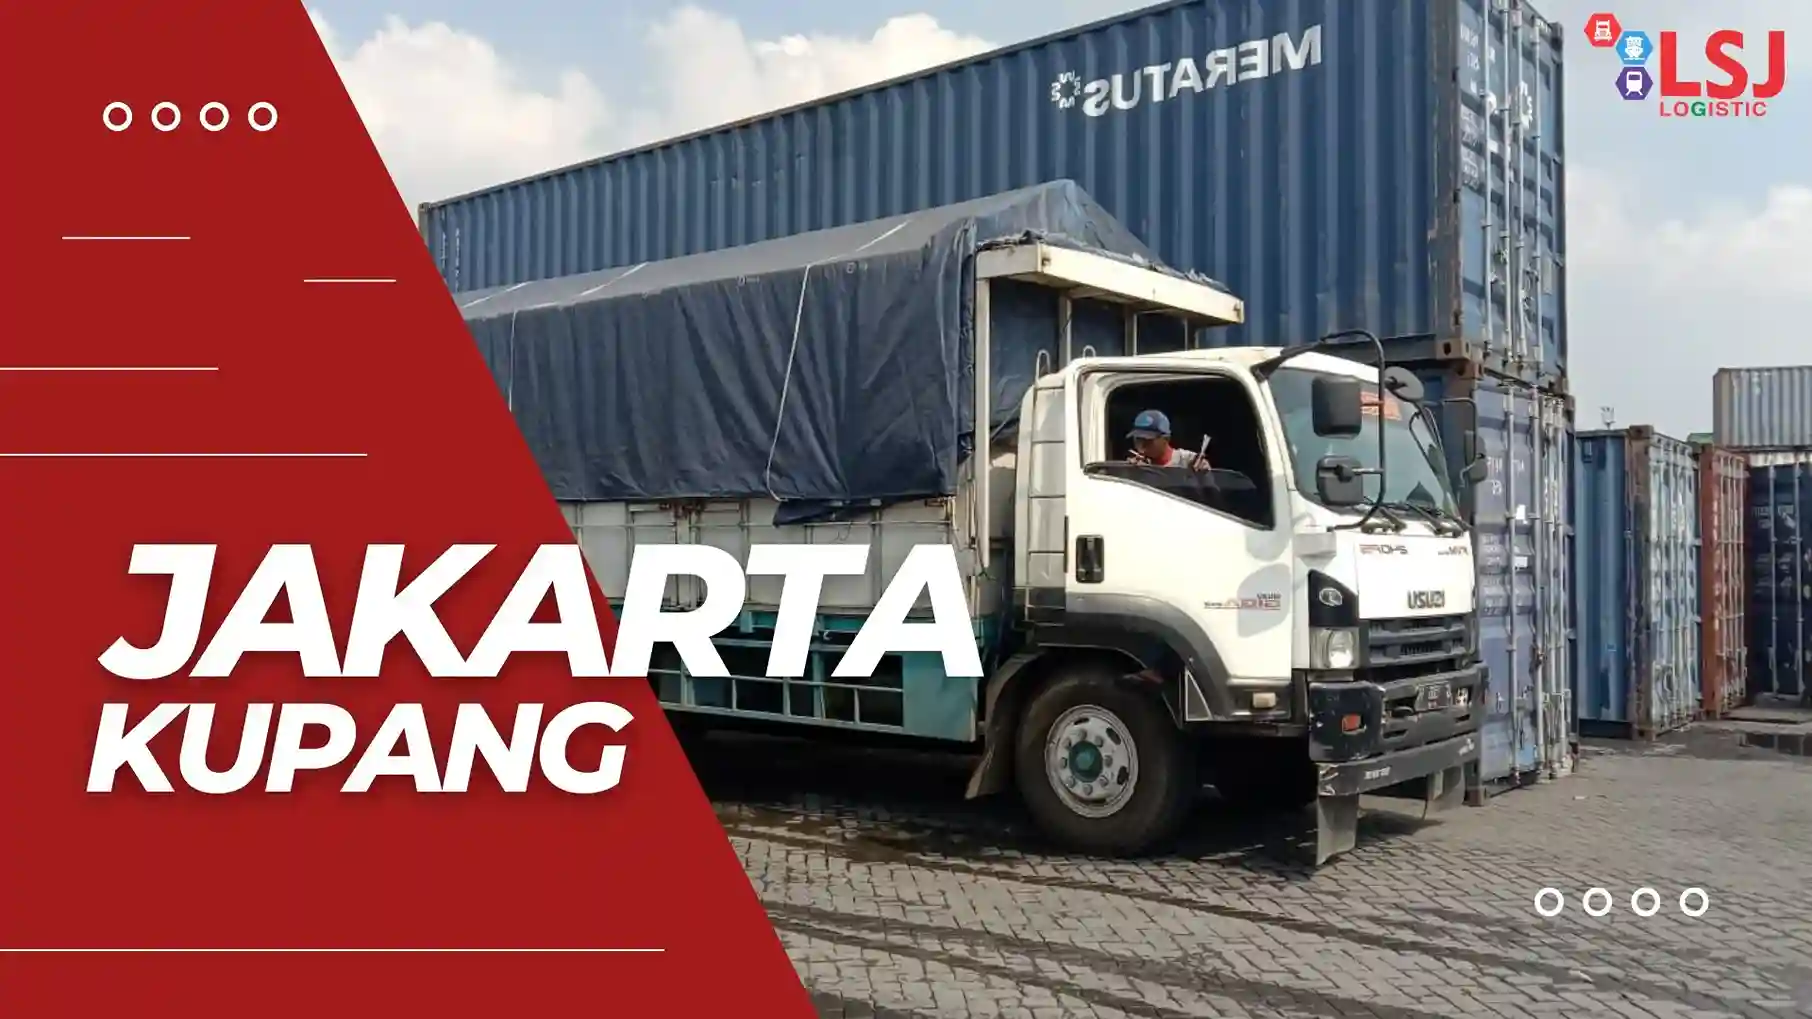 Ekspedisi Container Jakarta Kupang